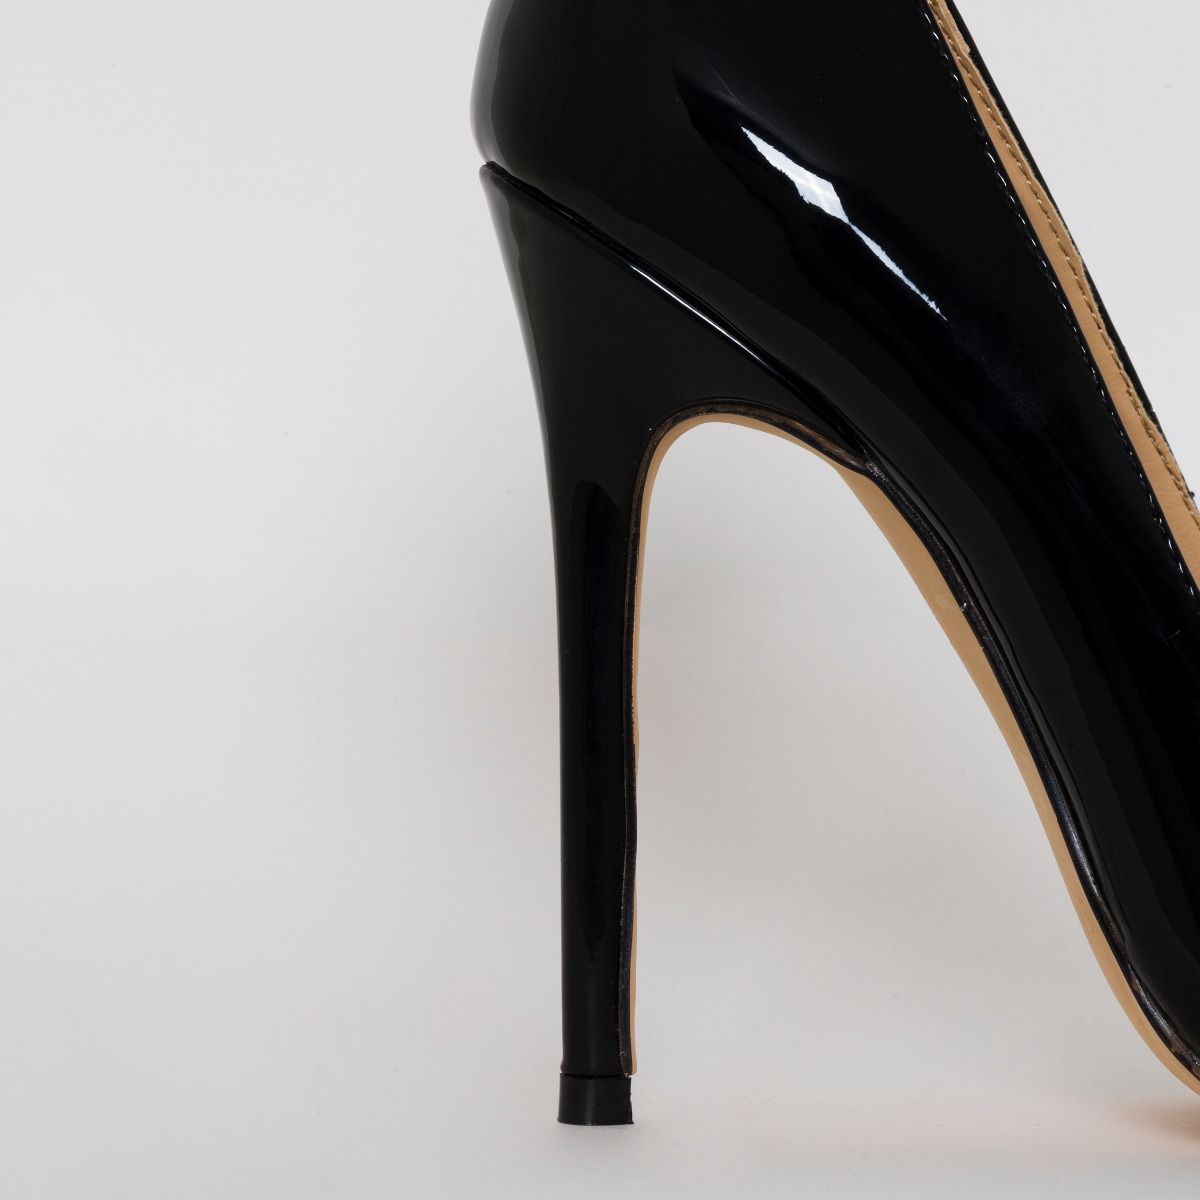 Mila Black Patent Stiletto Court Shoes